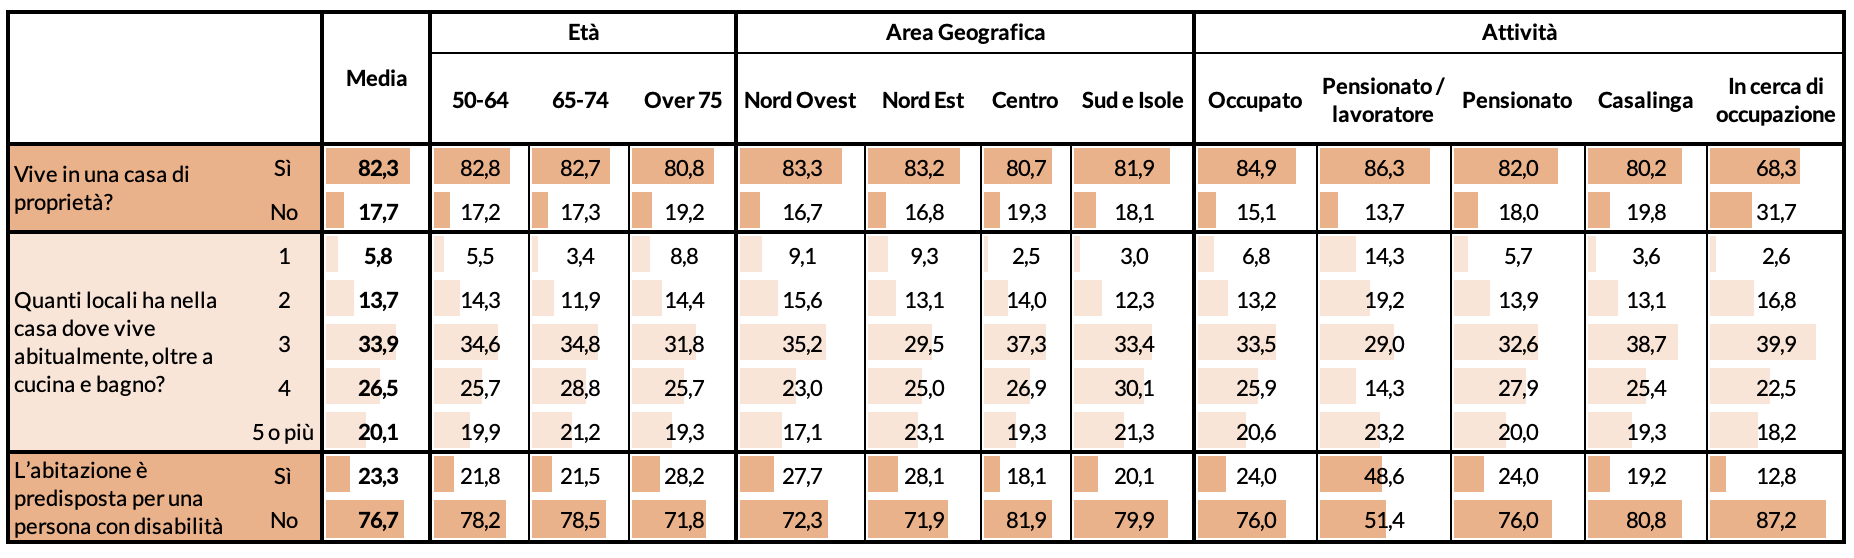 Figura 3 – Tipologia di abitazione, per età, area geografica e attività svolta (valori in %)